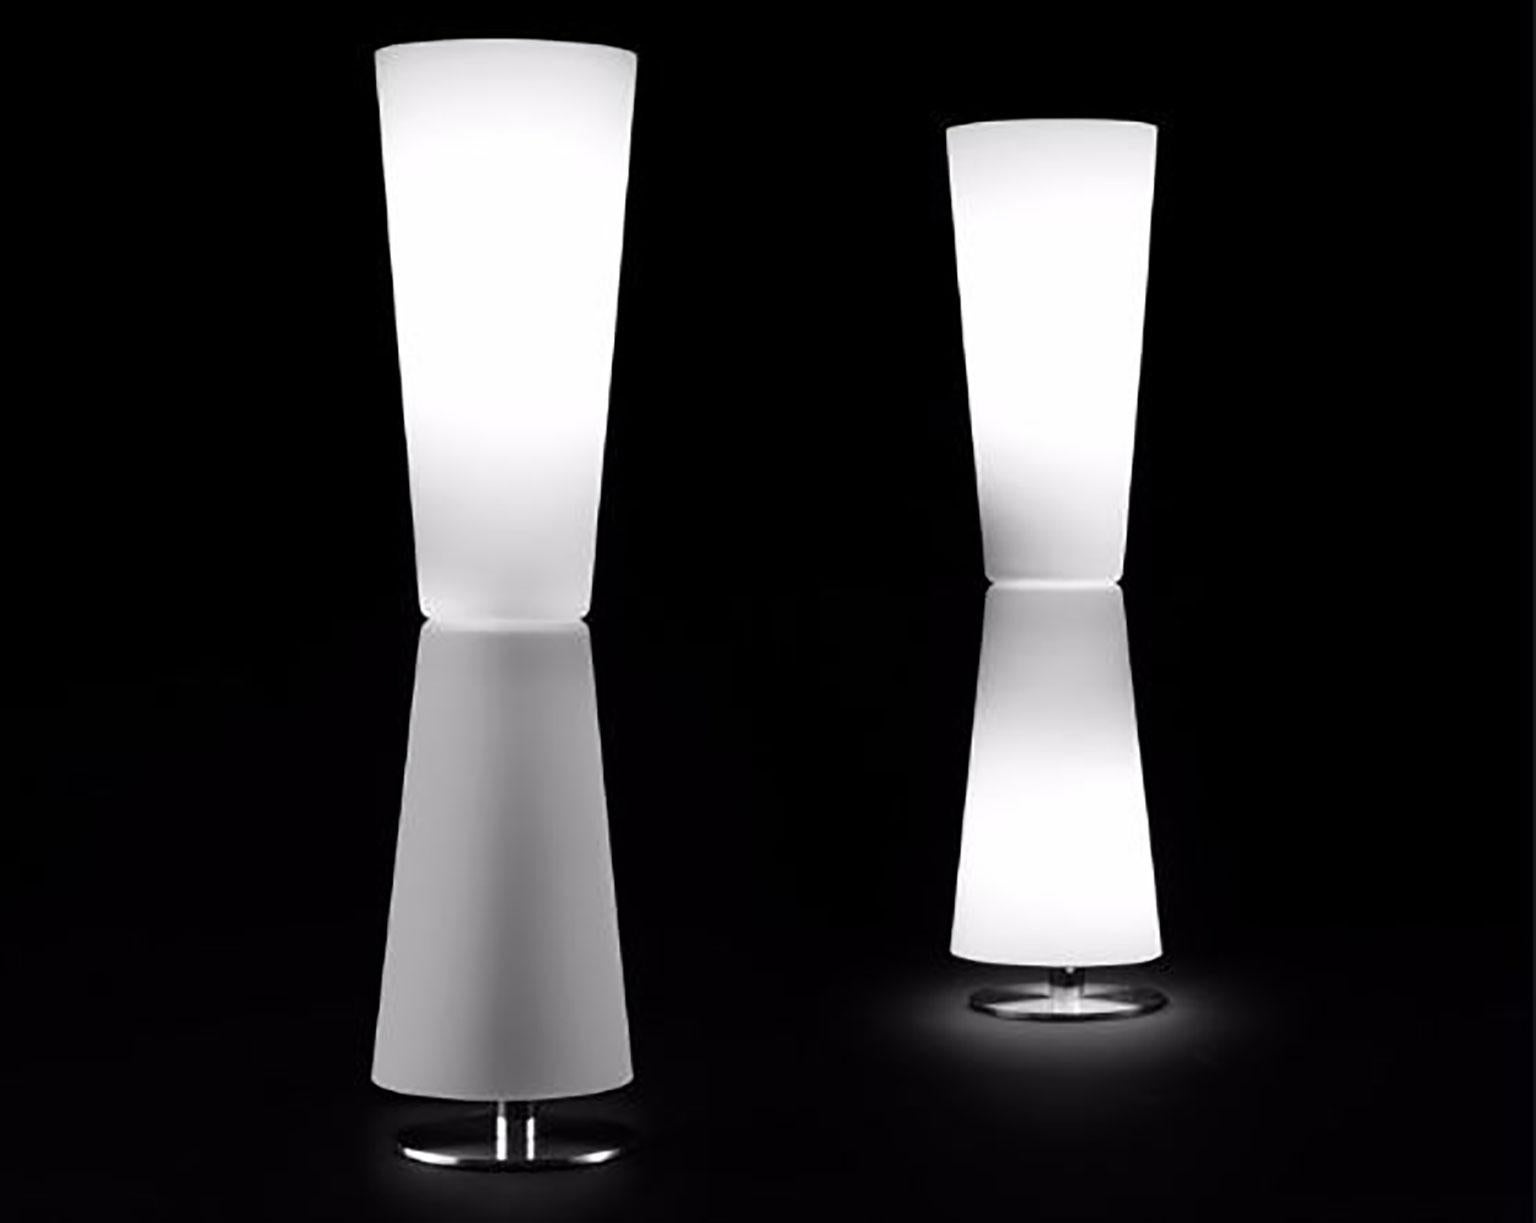 Lampe de table Lu-Lu conçue par Stefano Casciani pour Oluce. Cette lampe fournit une lumière contrôlable séparément à partir des moitiés supérieure et inférieure du luminaire à travers un diffuseur en verre soufflé de Murano avec du métal brossé